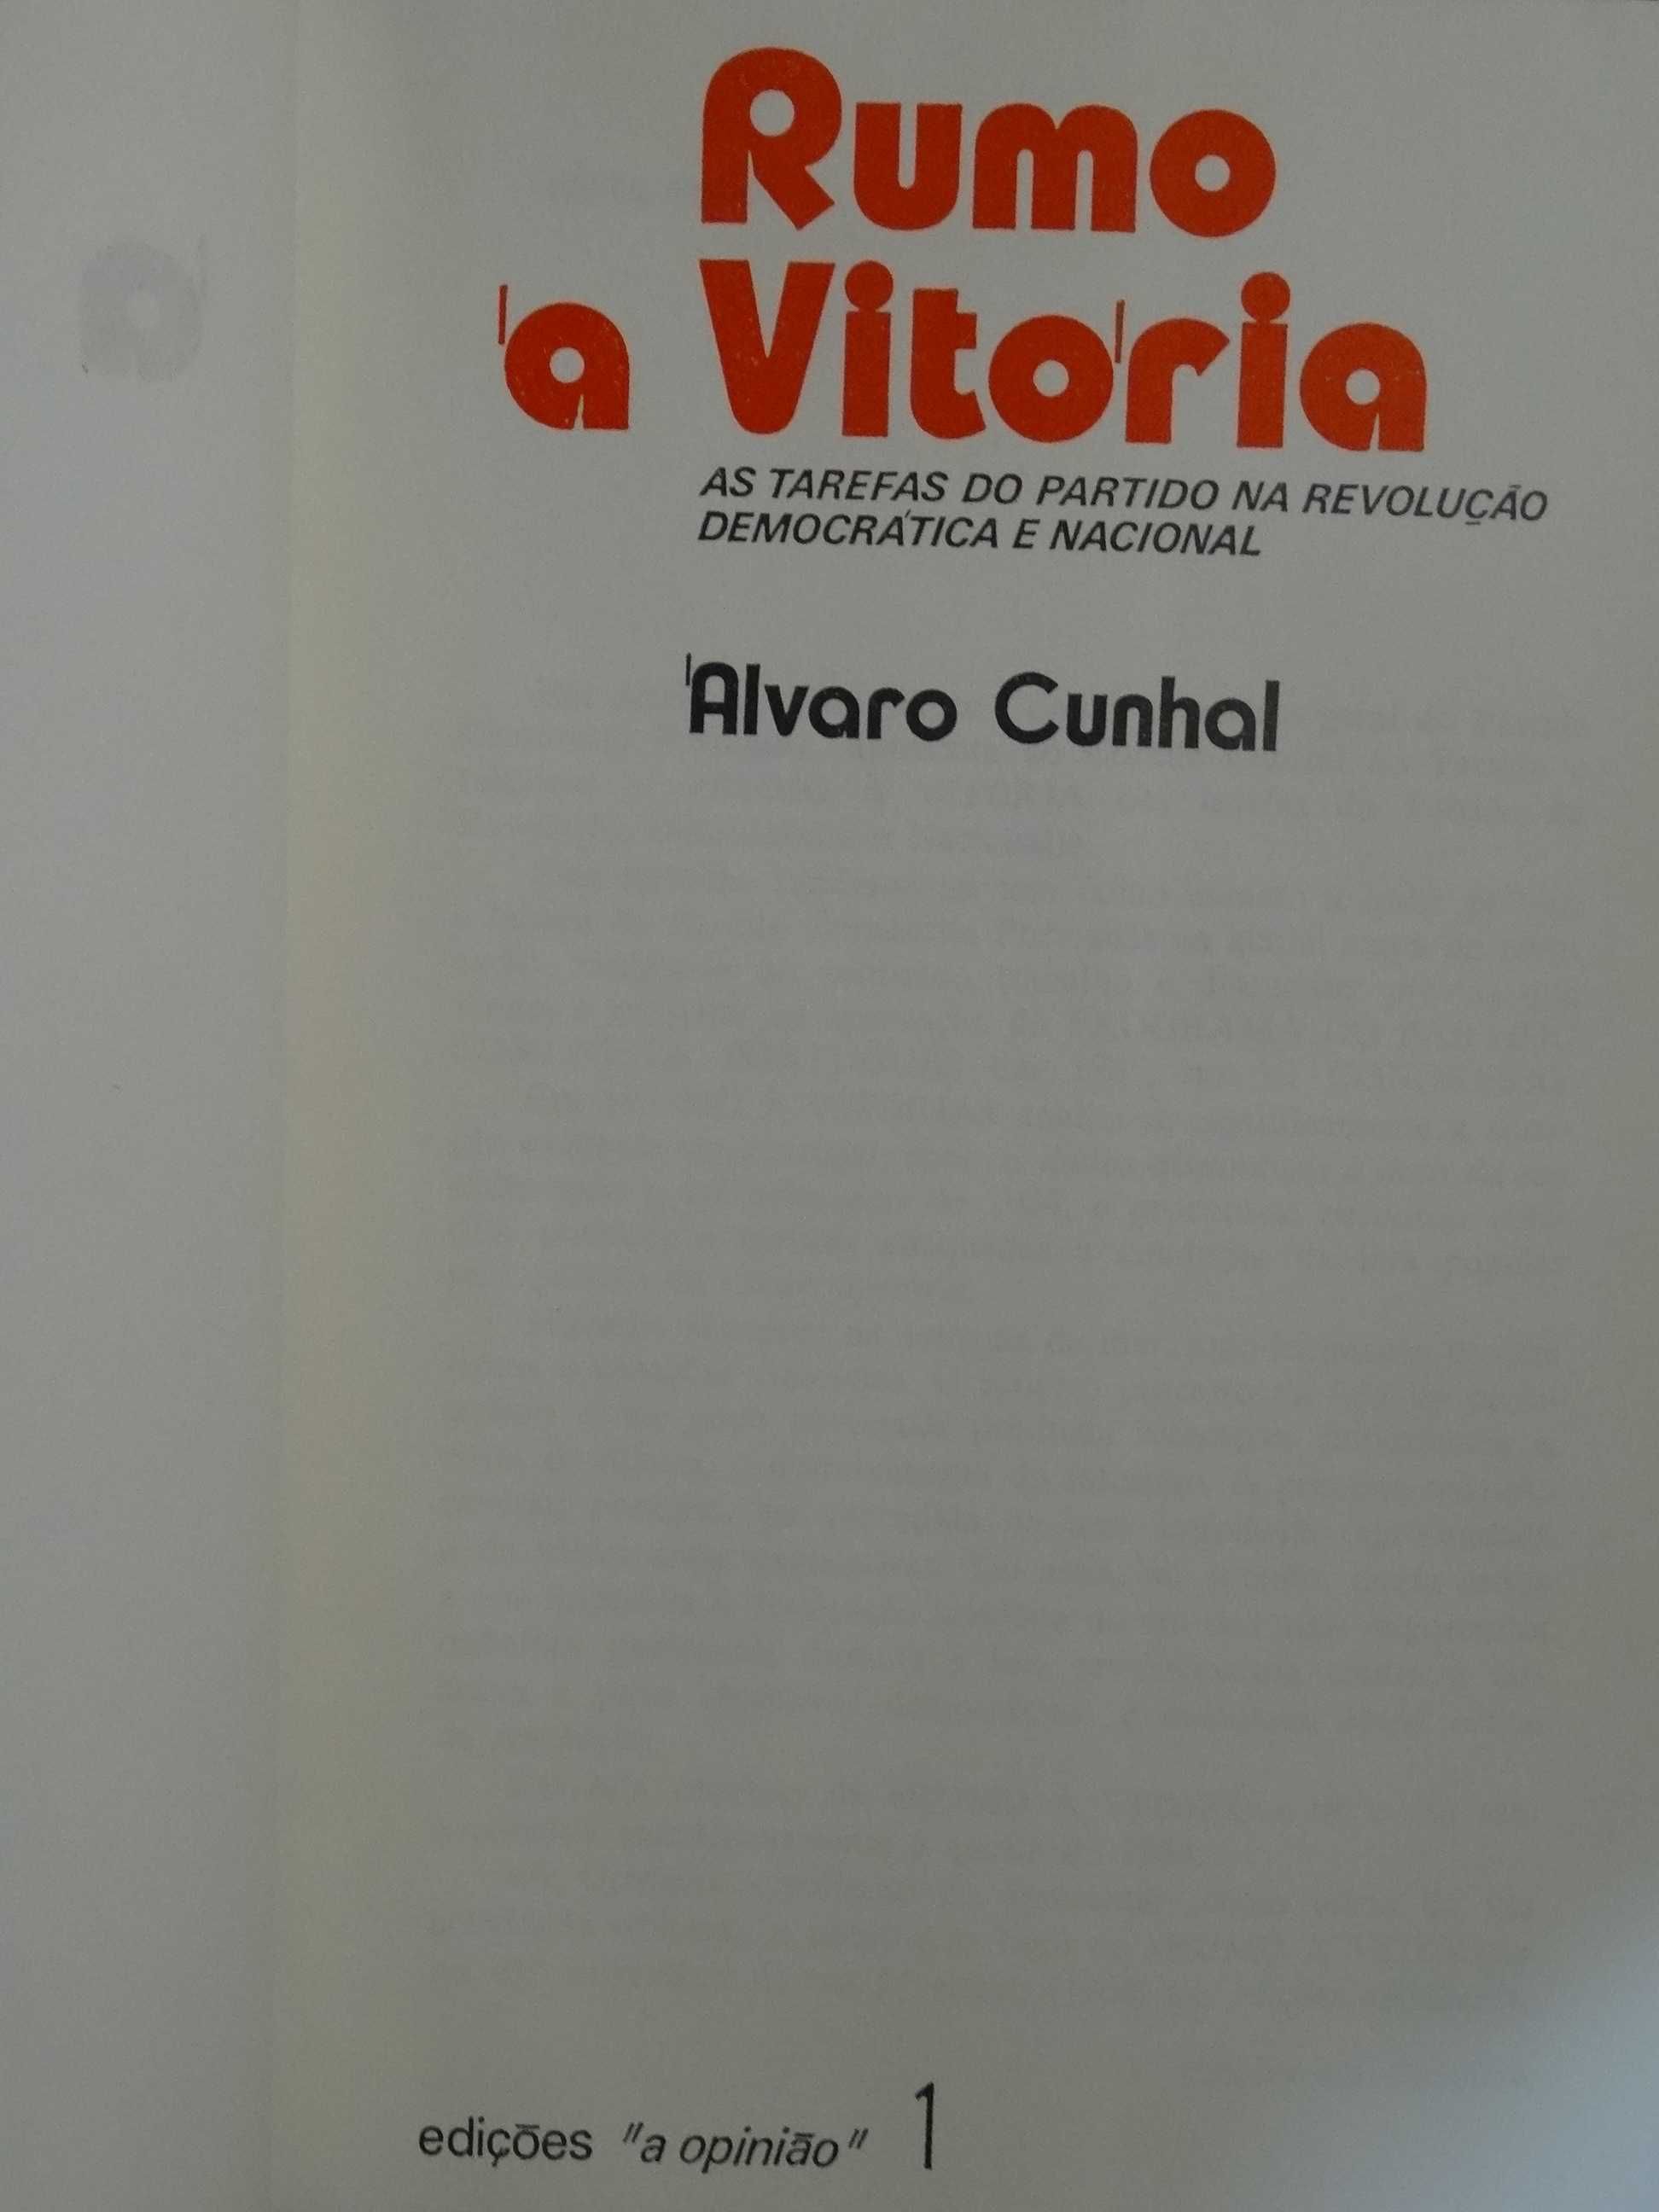 Rumo à Vitória de Álvaro Cunhal